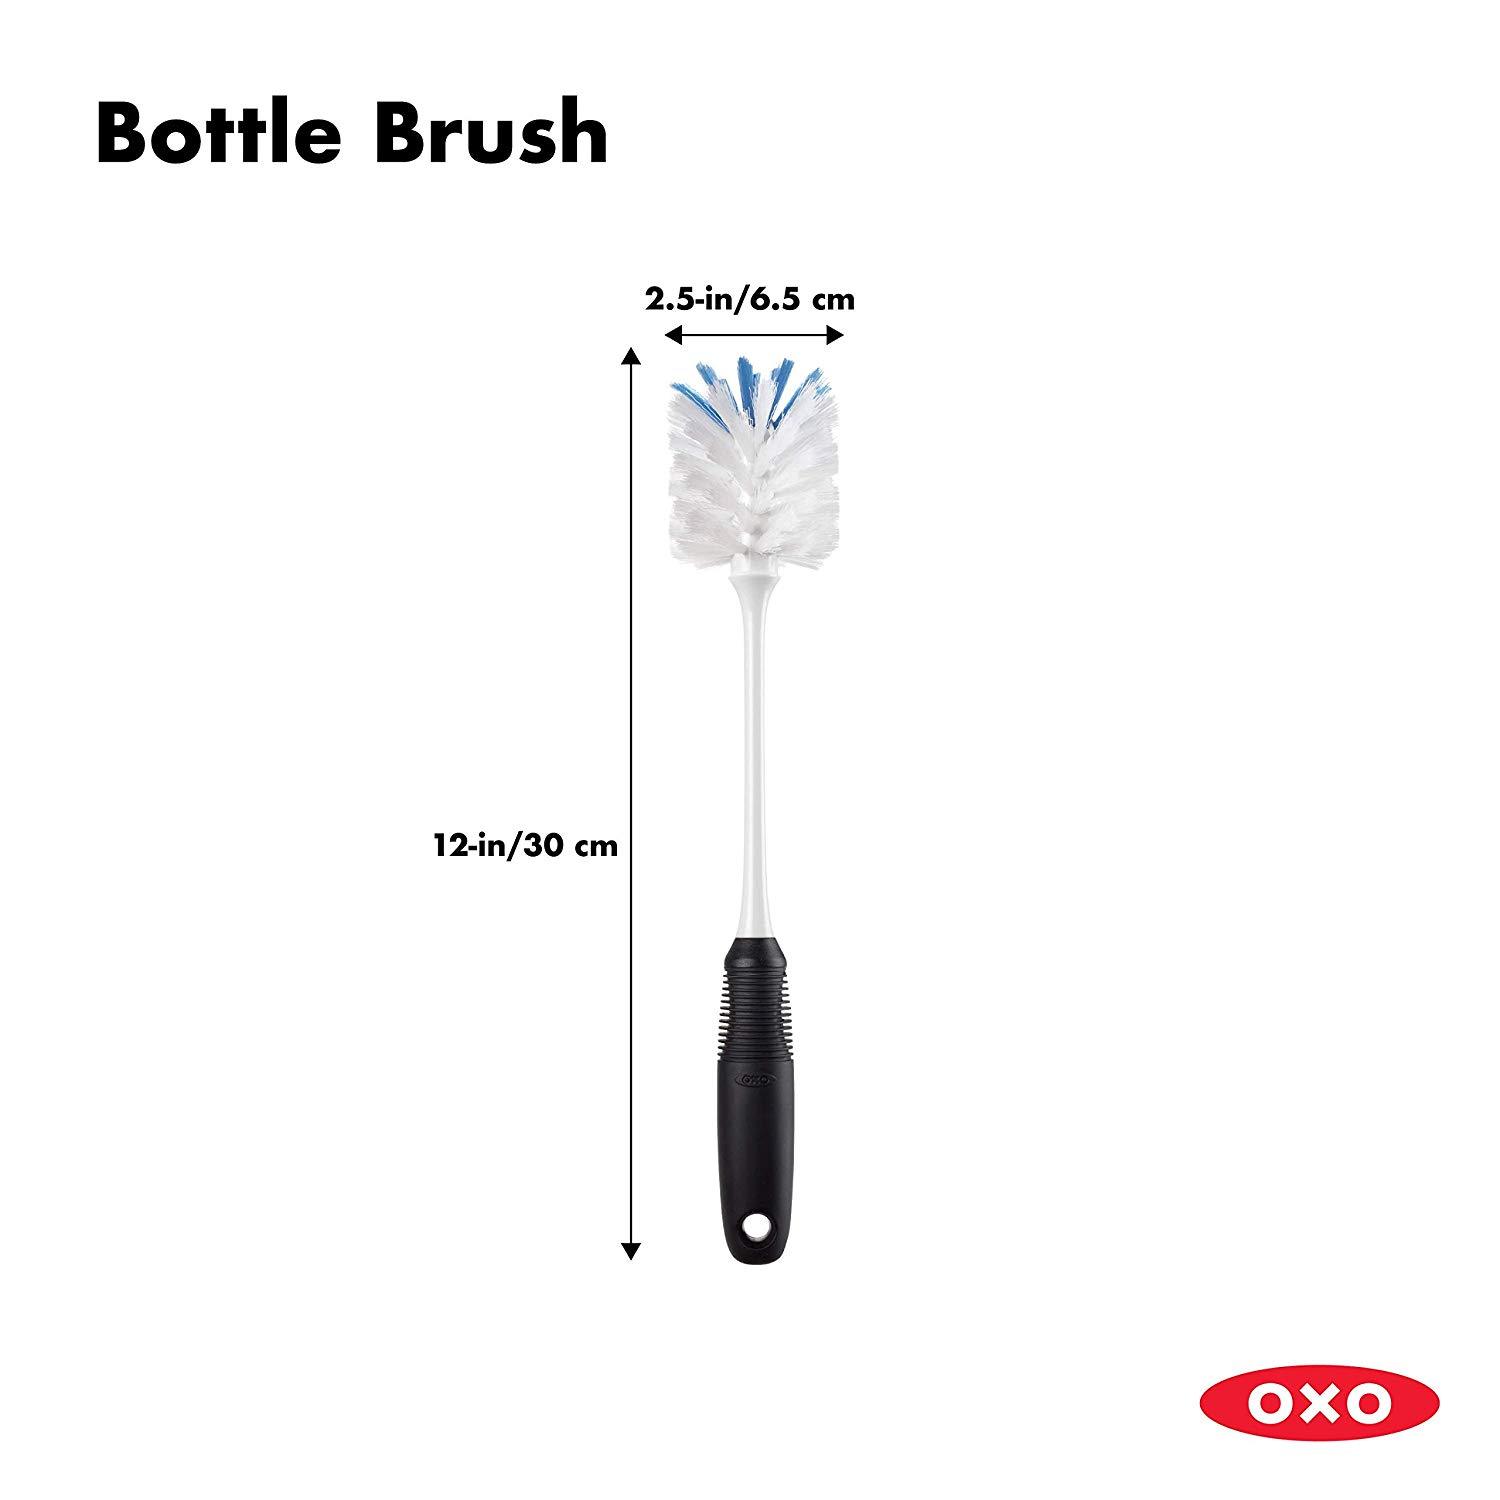 OXO Good Grips Bottle Brush - Review 